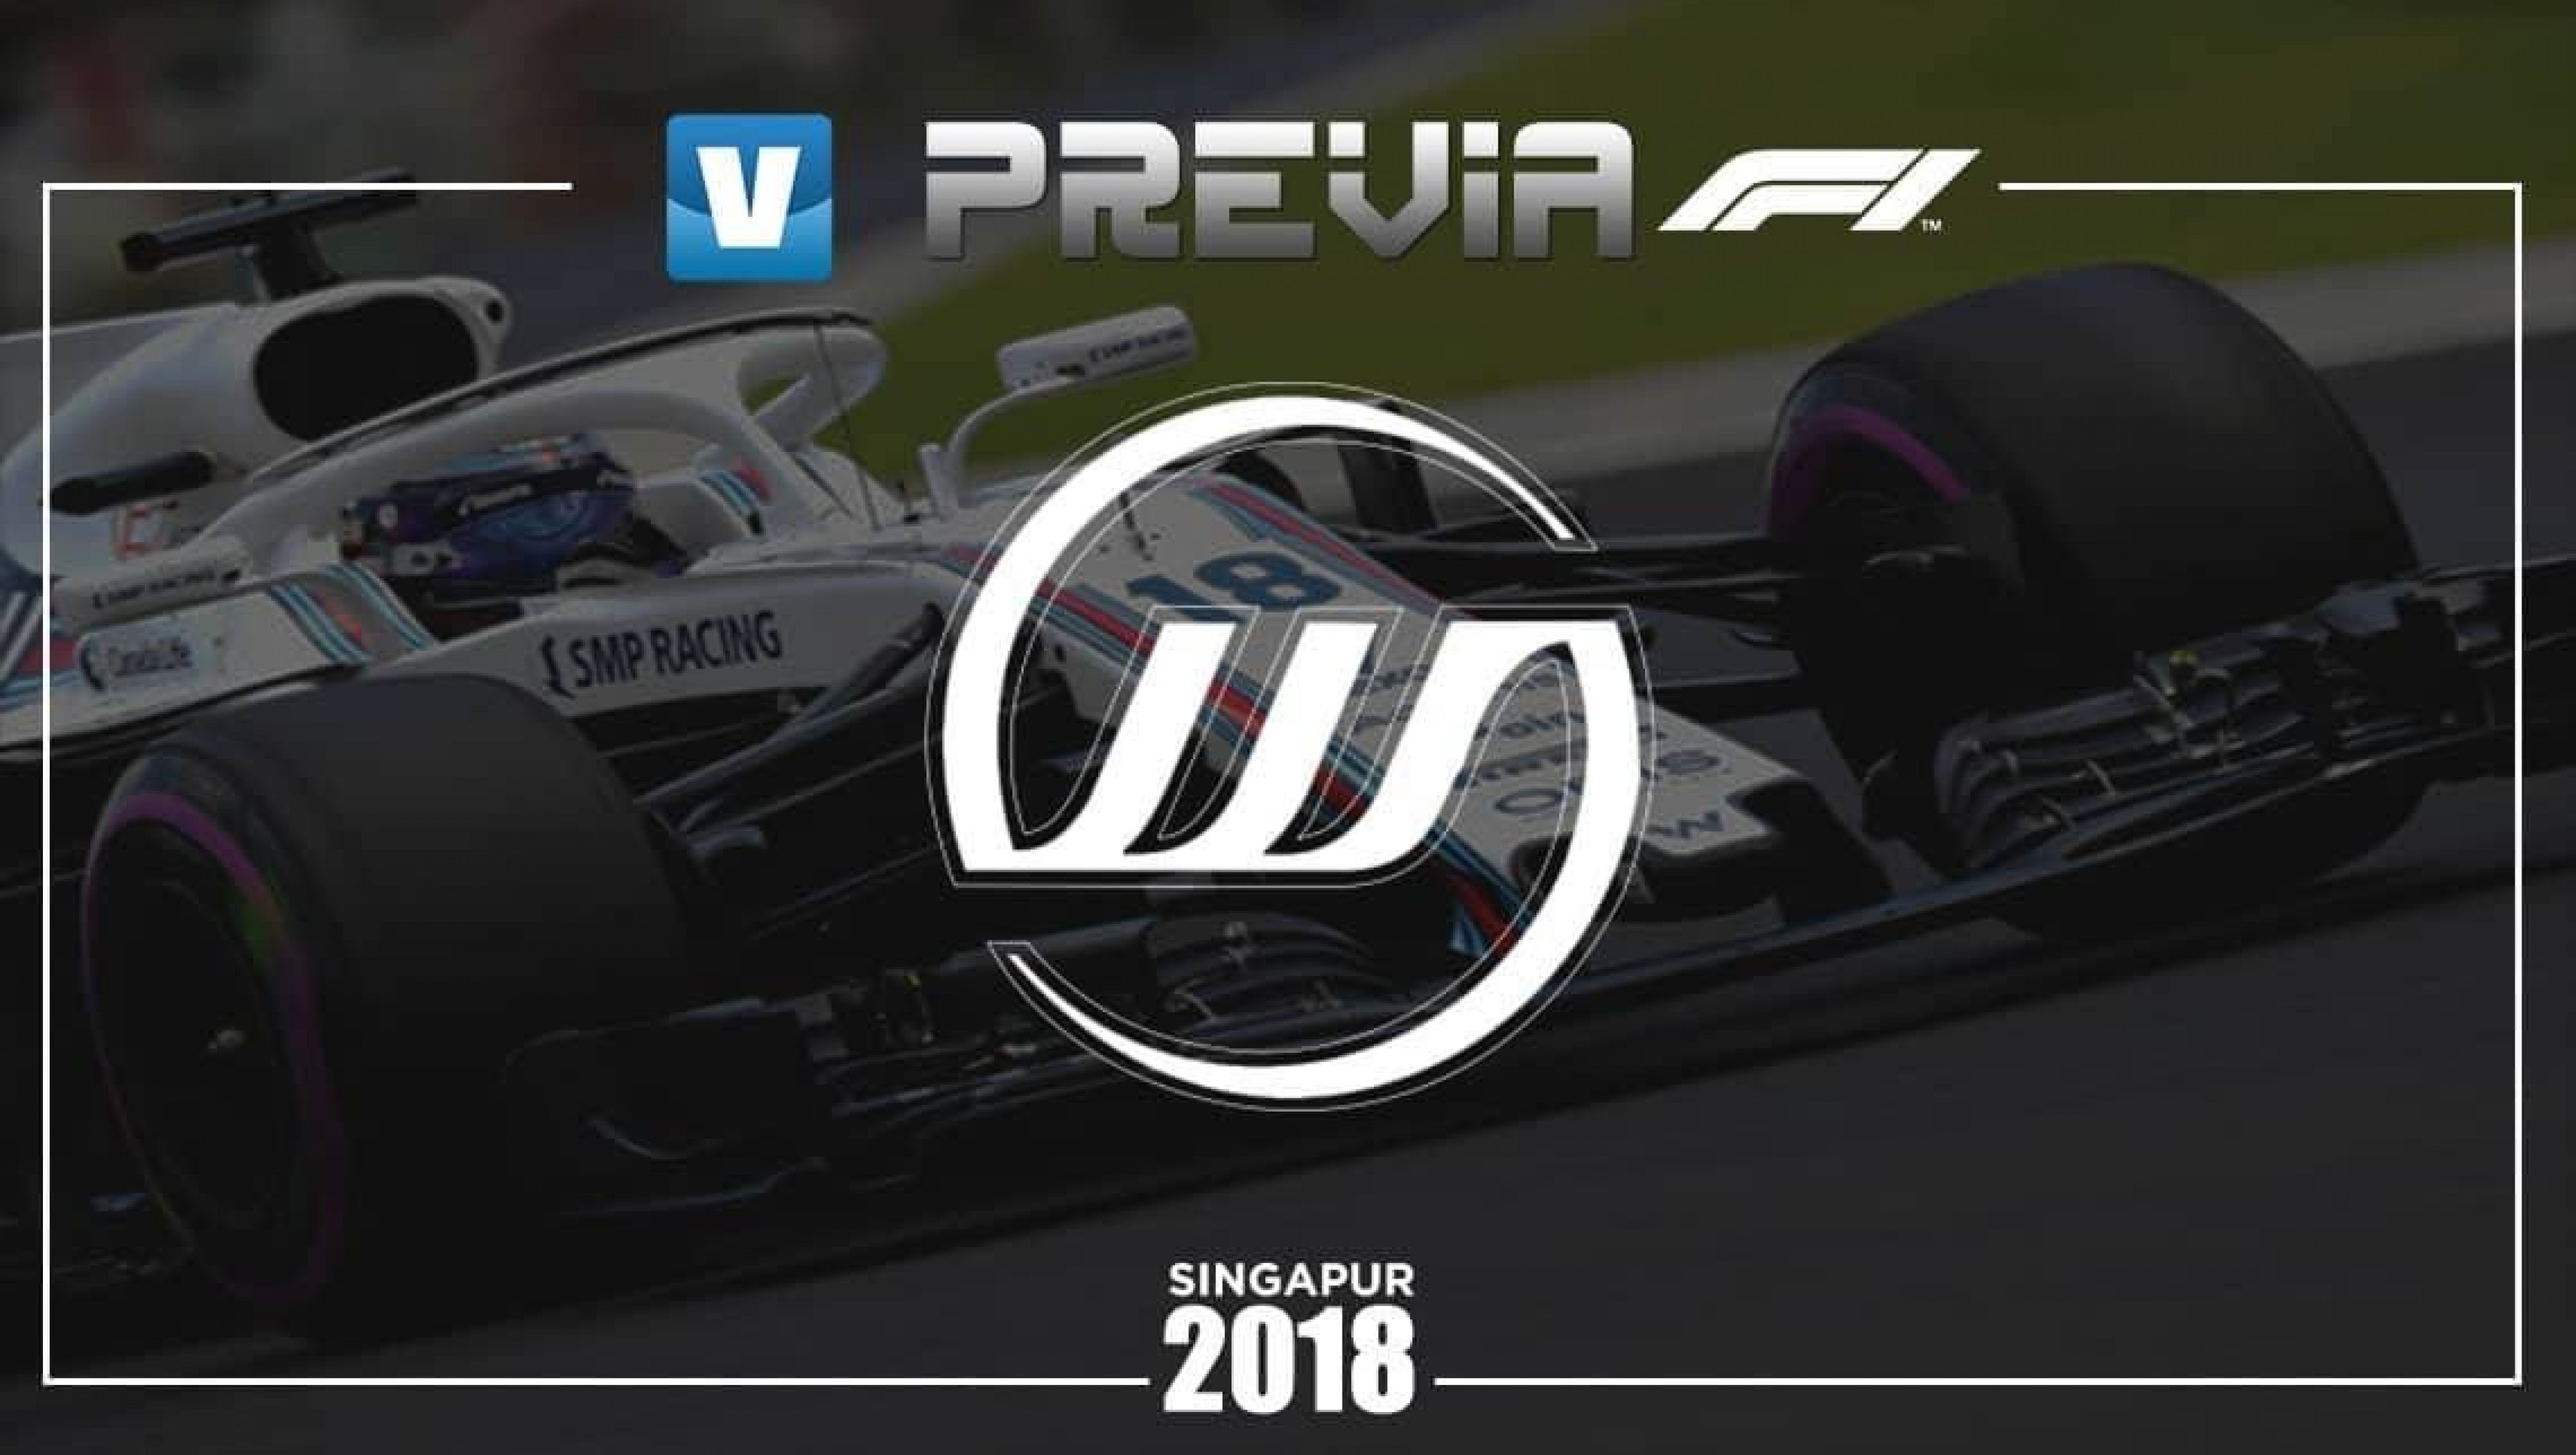 Previa de Williams en el GP de Singapur
2018: a por más puntos